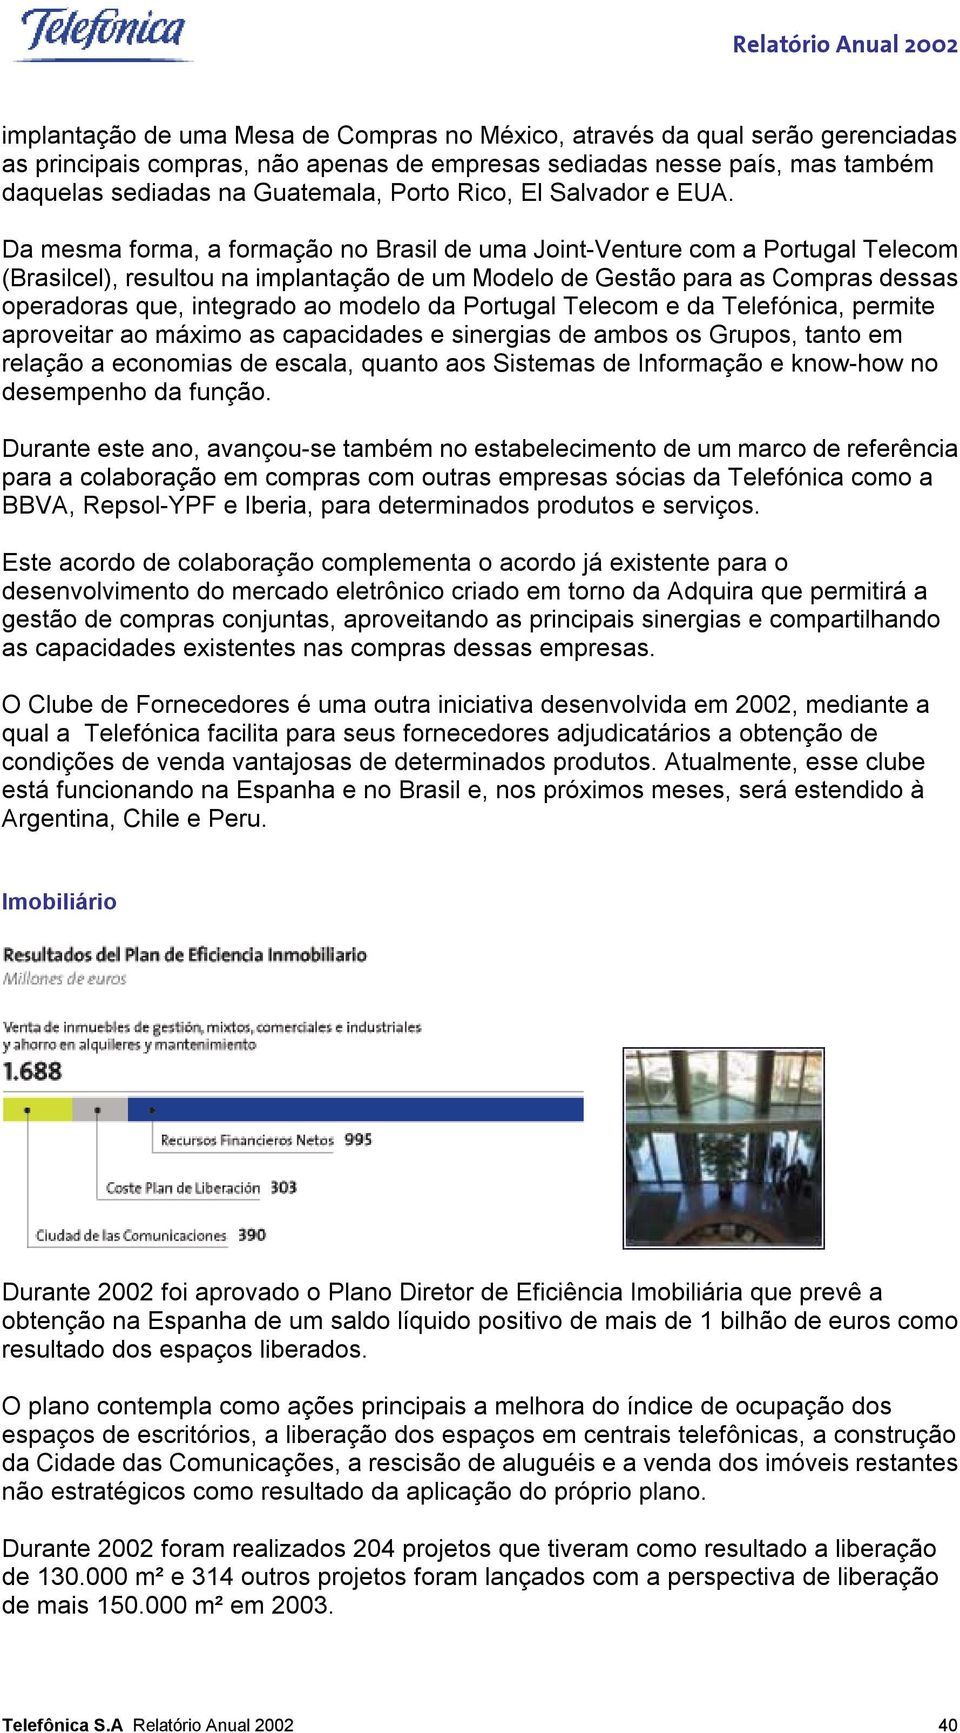 Da mesma forma, a formação no Brasil de uma Joint-Venture com a Portugal Telecom (Brasilcel), resultou na implantação de um Modelo de Gestão para as Compras dessas operadoras que, integrado ao modelo